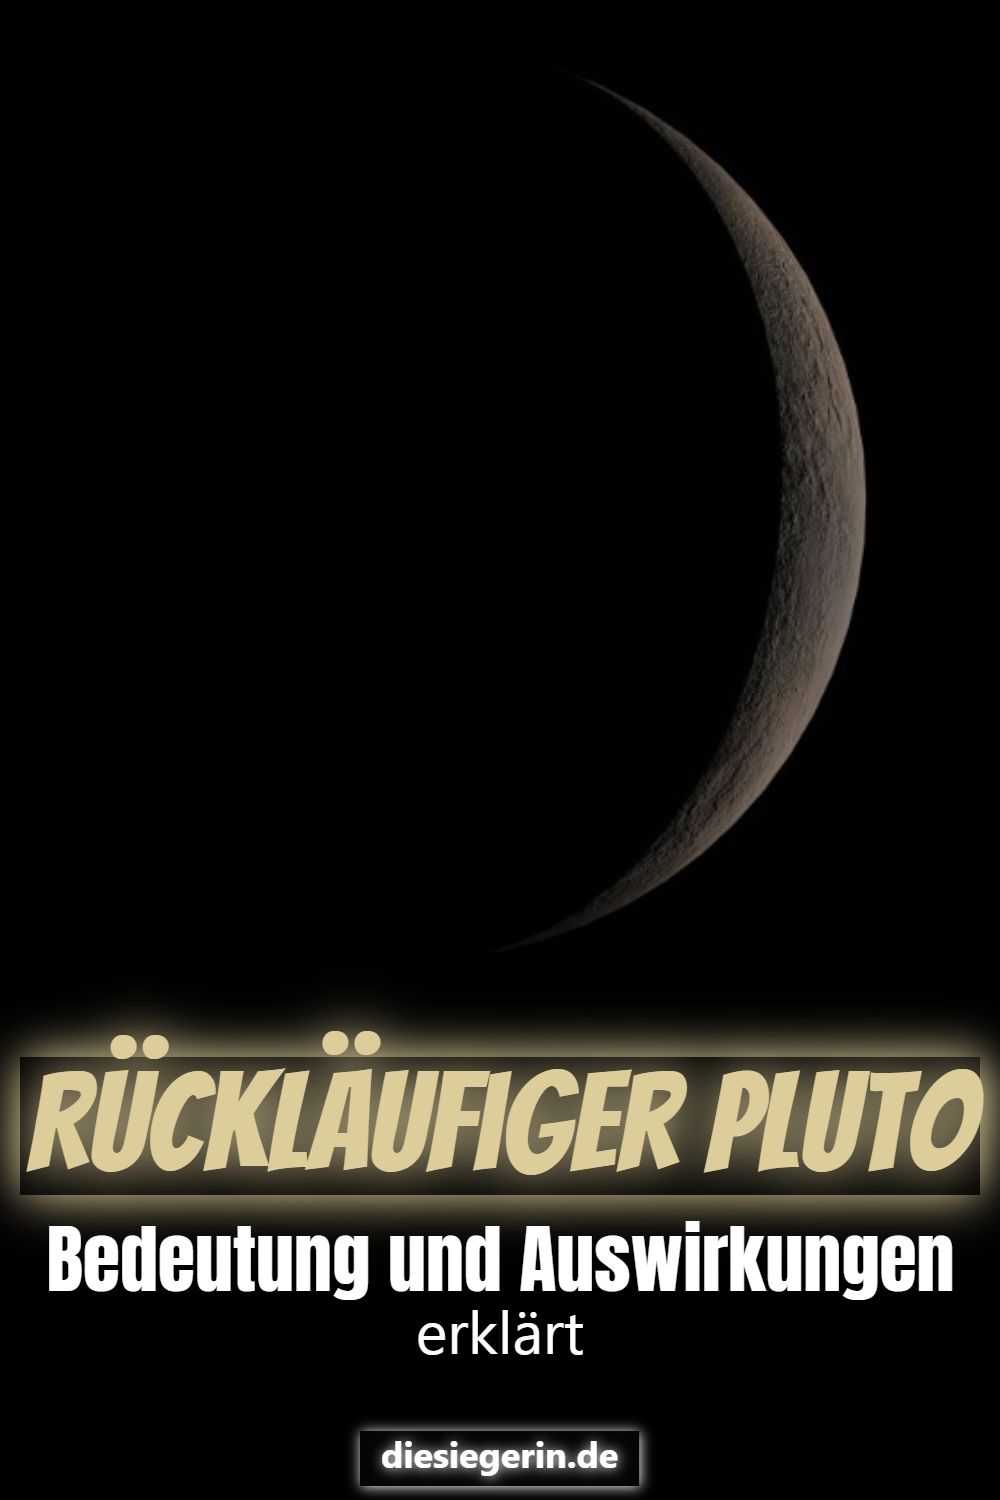 Rückläufiger Pluto Bedeutung und Auswirkungen erklärt